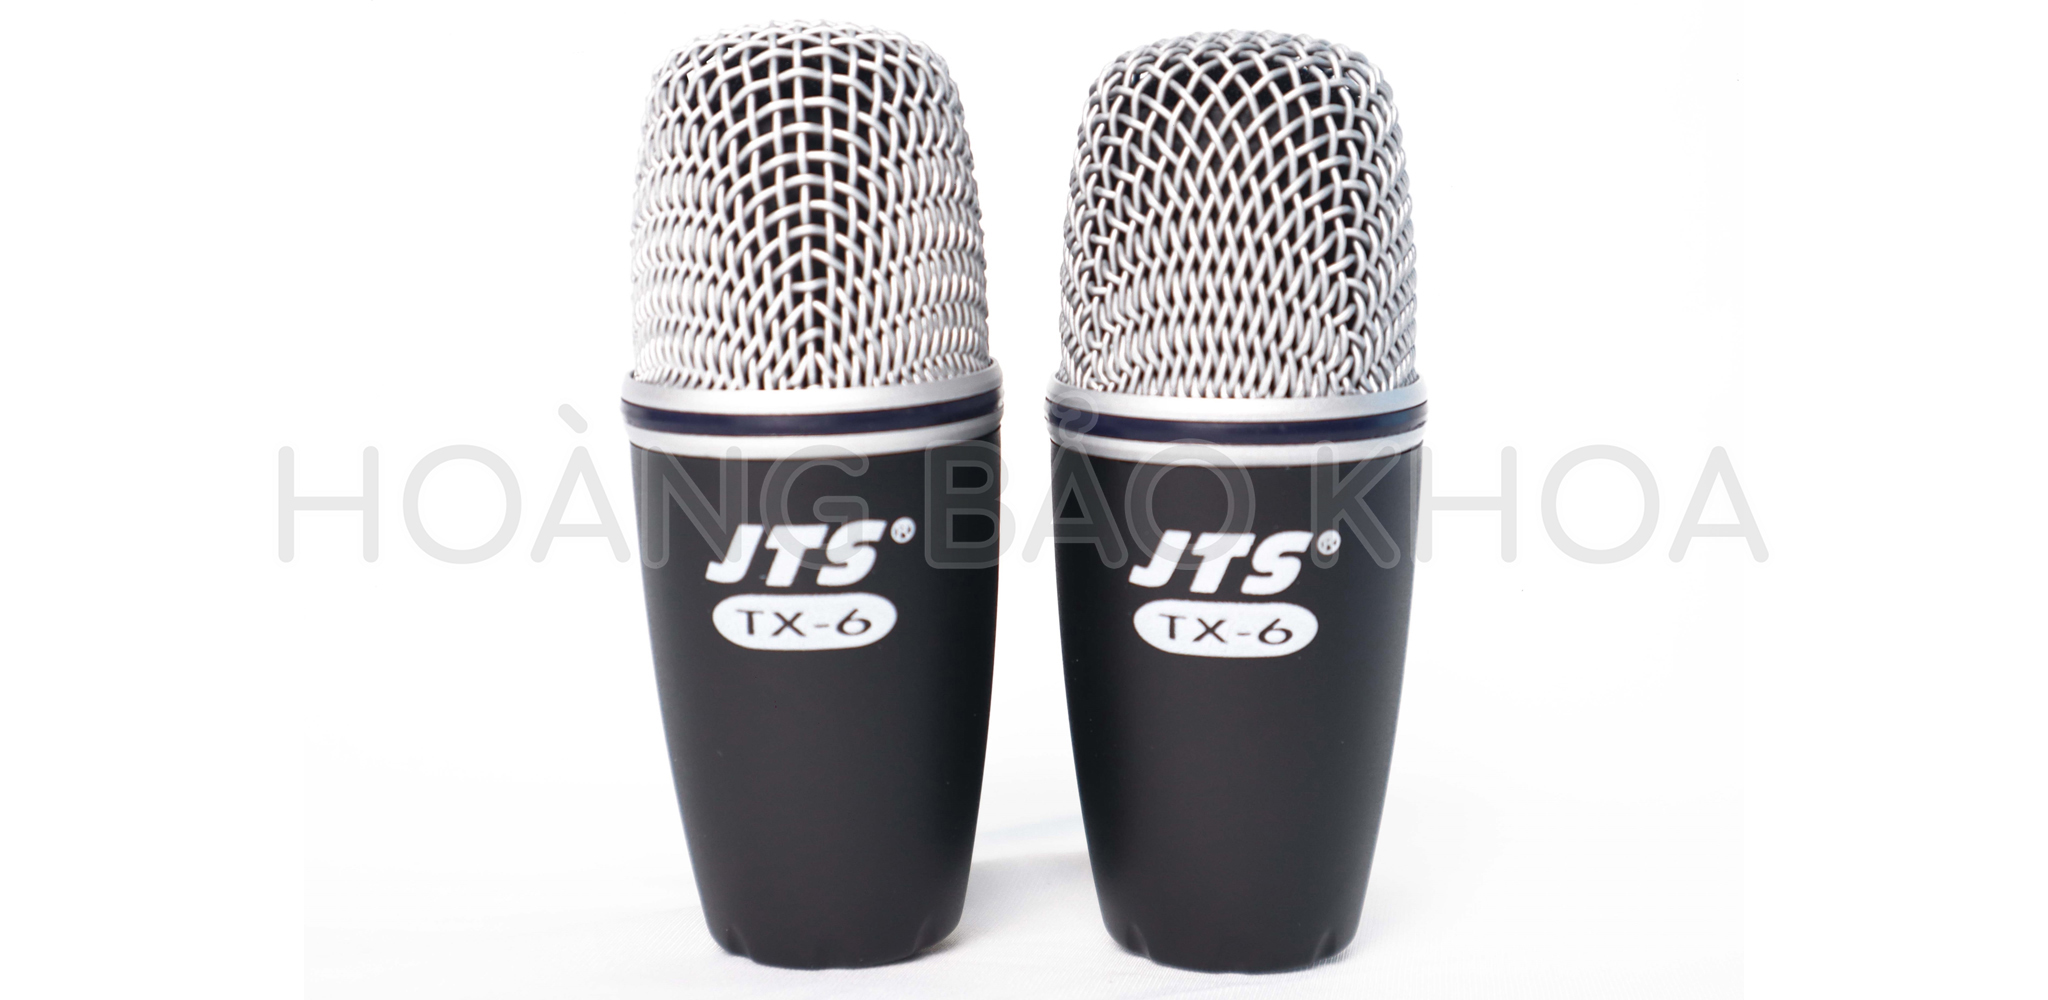 TXB-5M Microphone Kit 1 TX-2 và 2 TX-6, 2 TX-9 JTS - HÀNG CHÍNH HÃNG